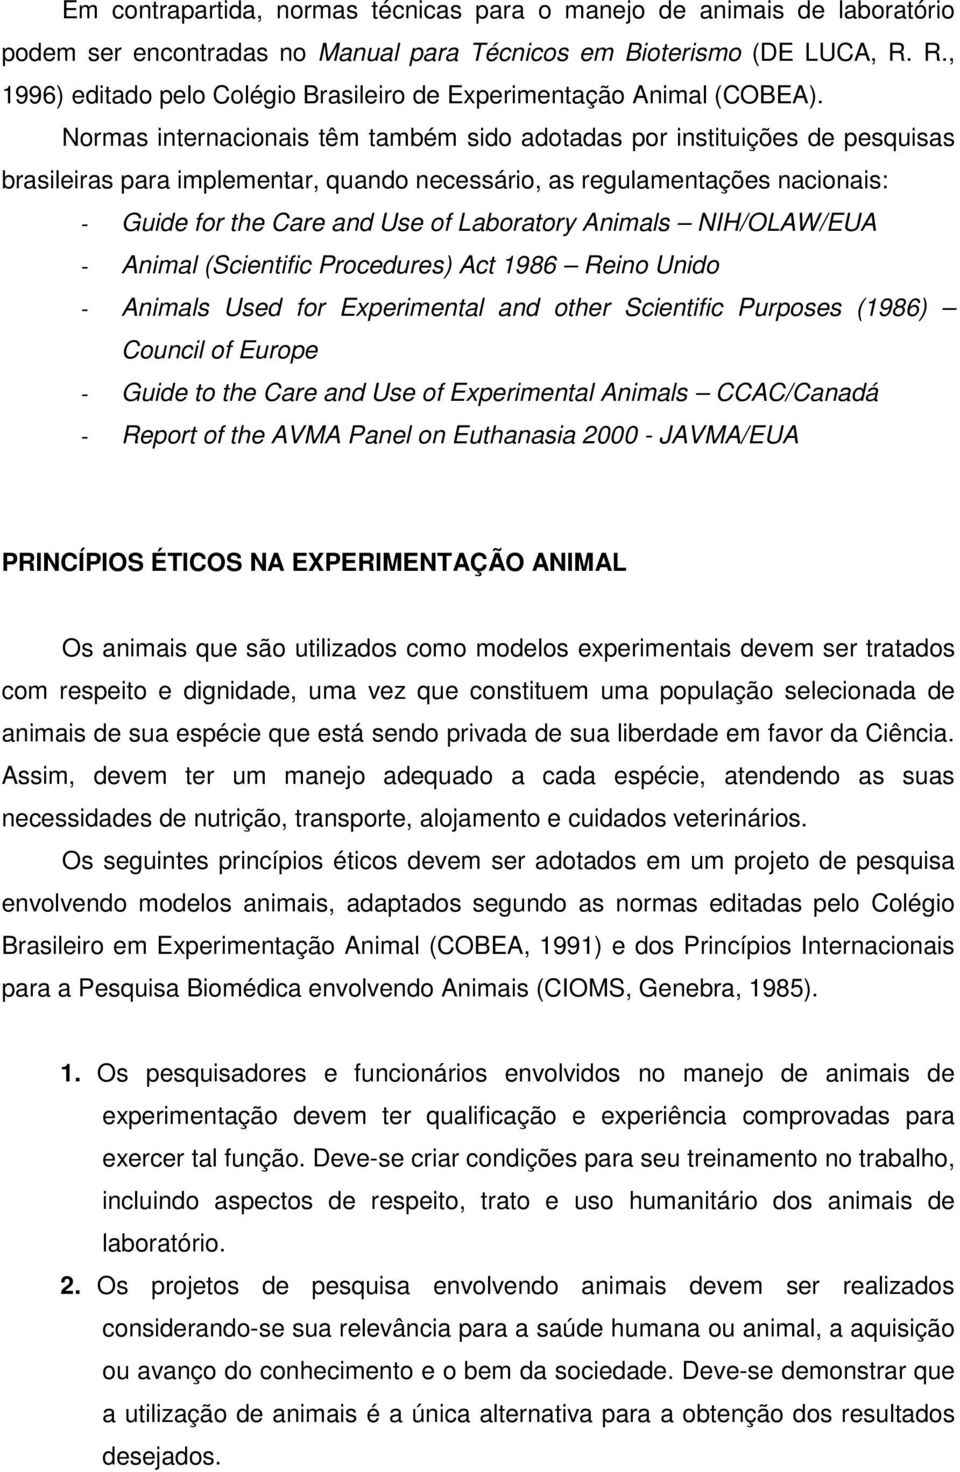 Normas internacionais têm também sido adotadas por instituições de pesquisas brasileiras para implementar, quando necessário, as regulamentações nacionais: - Guide for the Care and Use of Laboratory